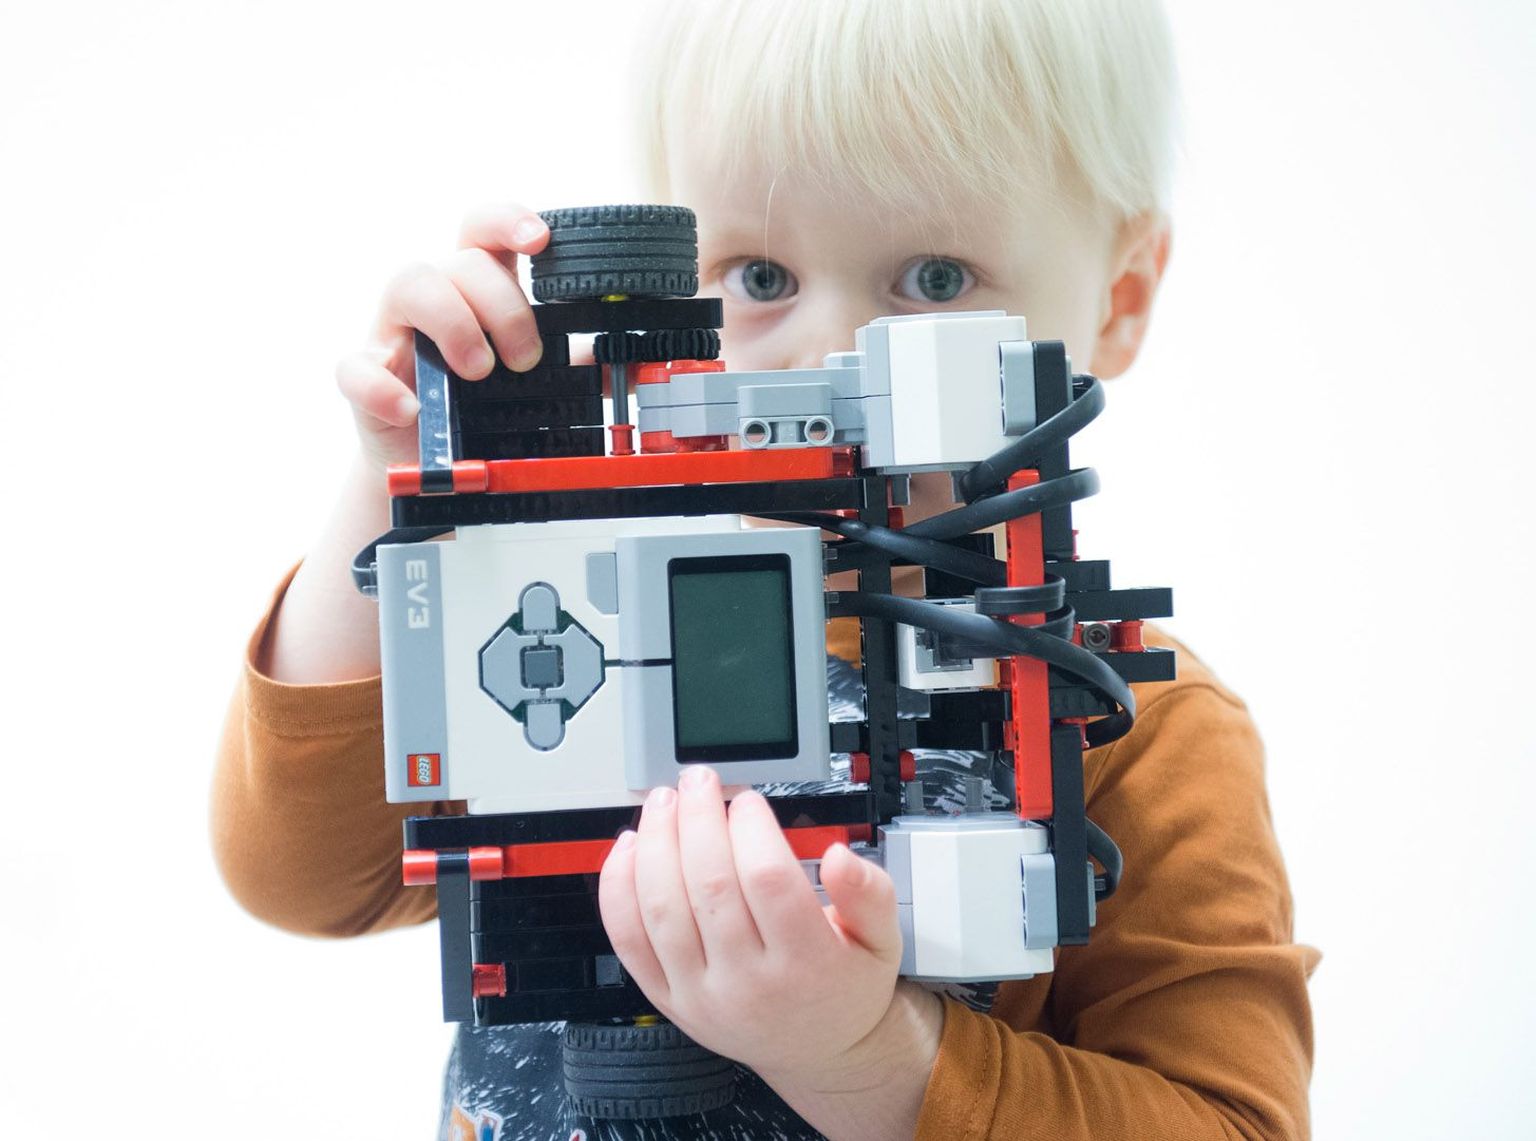 Kolmeaastane Siim Sebastian on nädalalõpul Tallinnas
toimuva robotivõistluse Robotex noorim osavõtja.